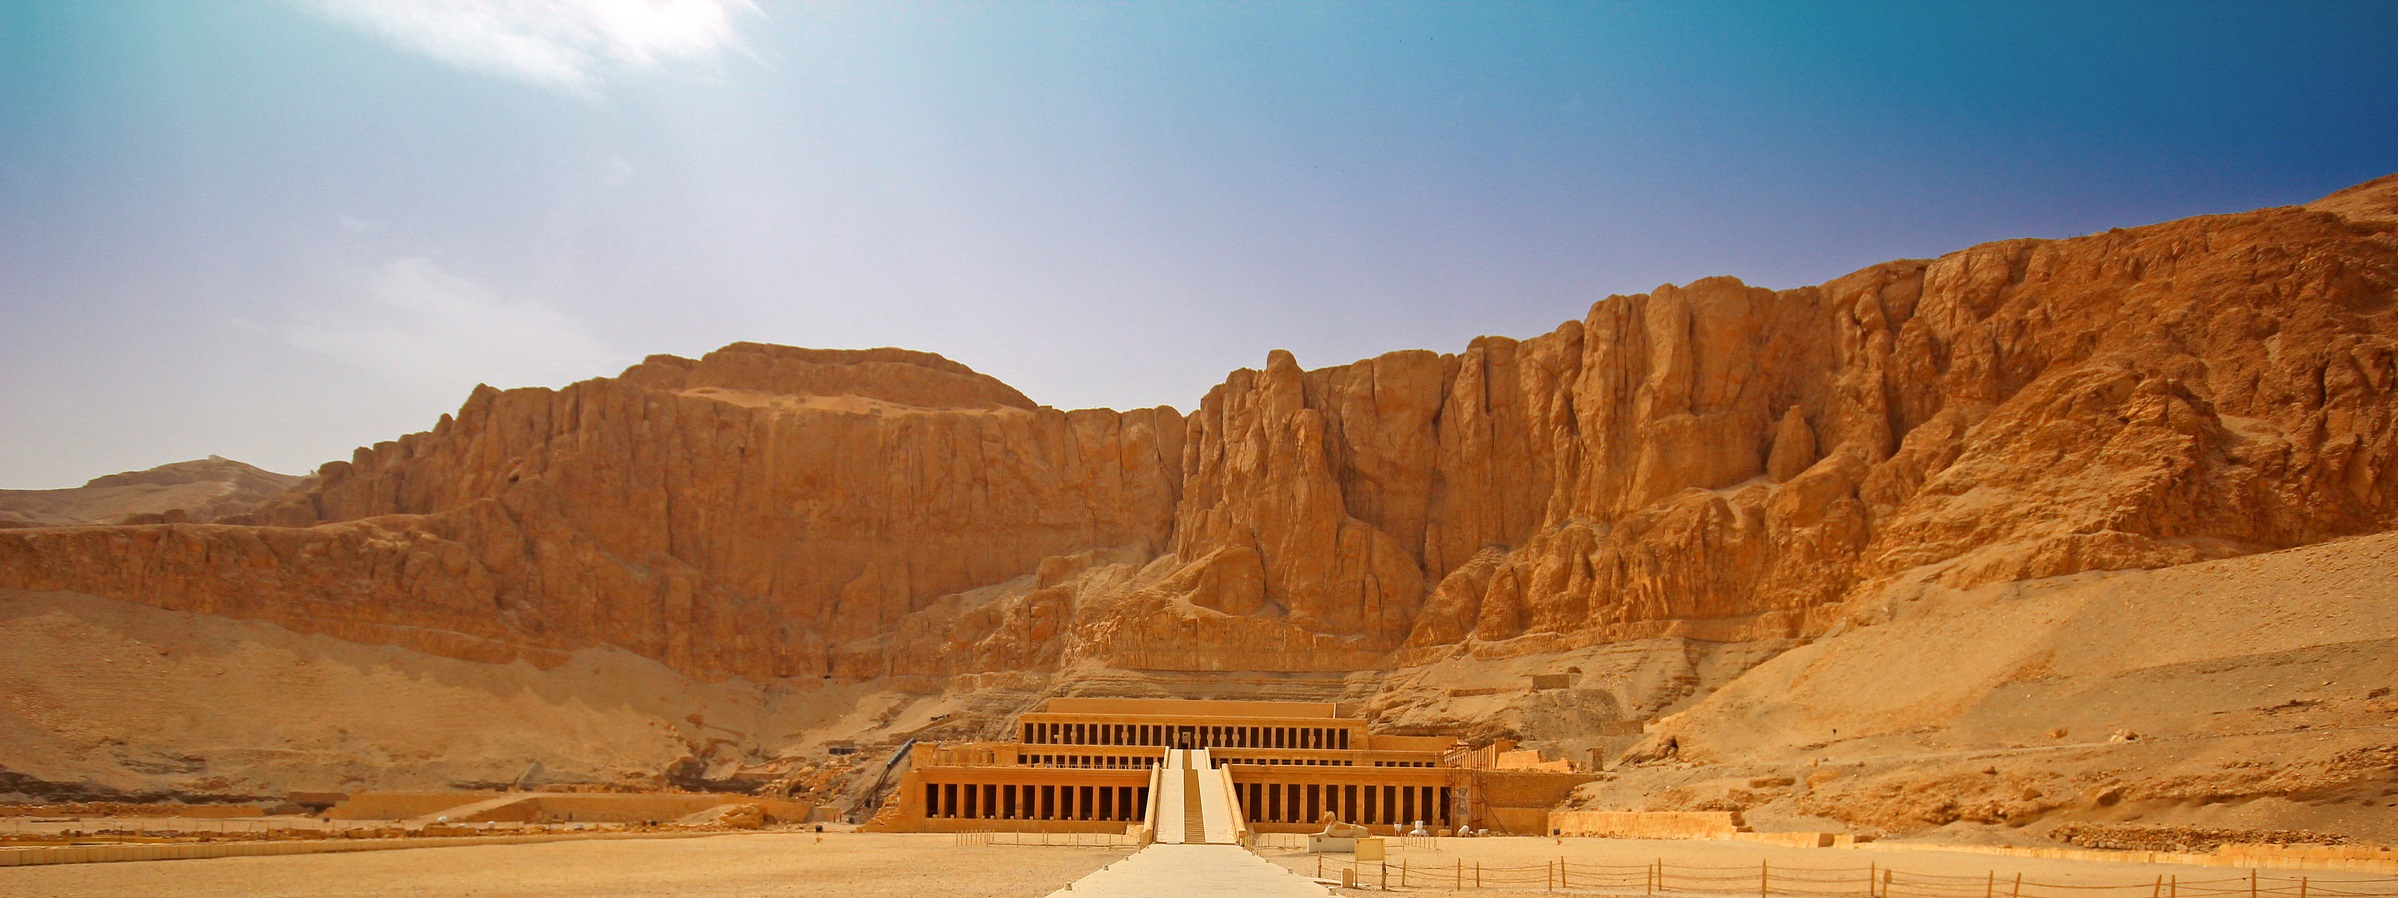 Niers Tours: туроператор по въезду в Египет